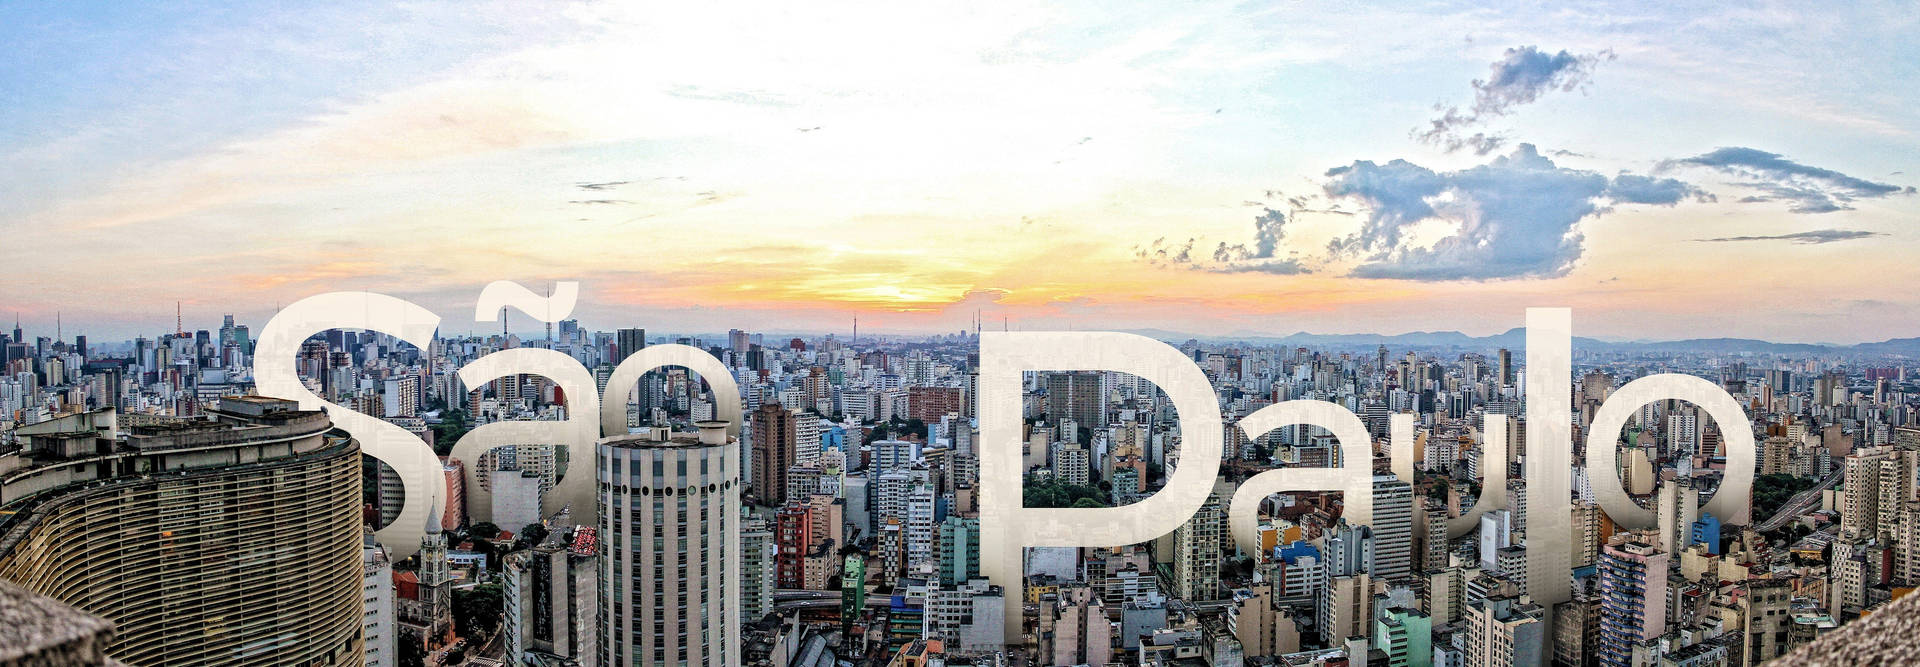 Plano De Fundo De São Paulo